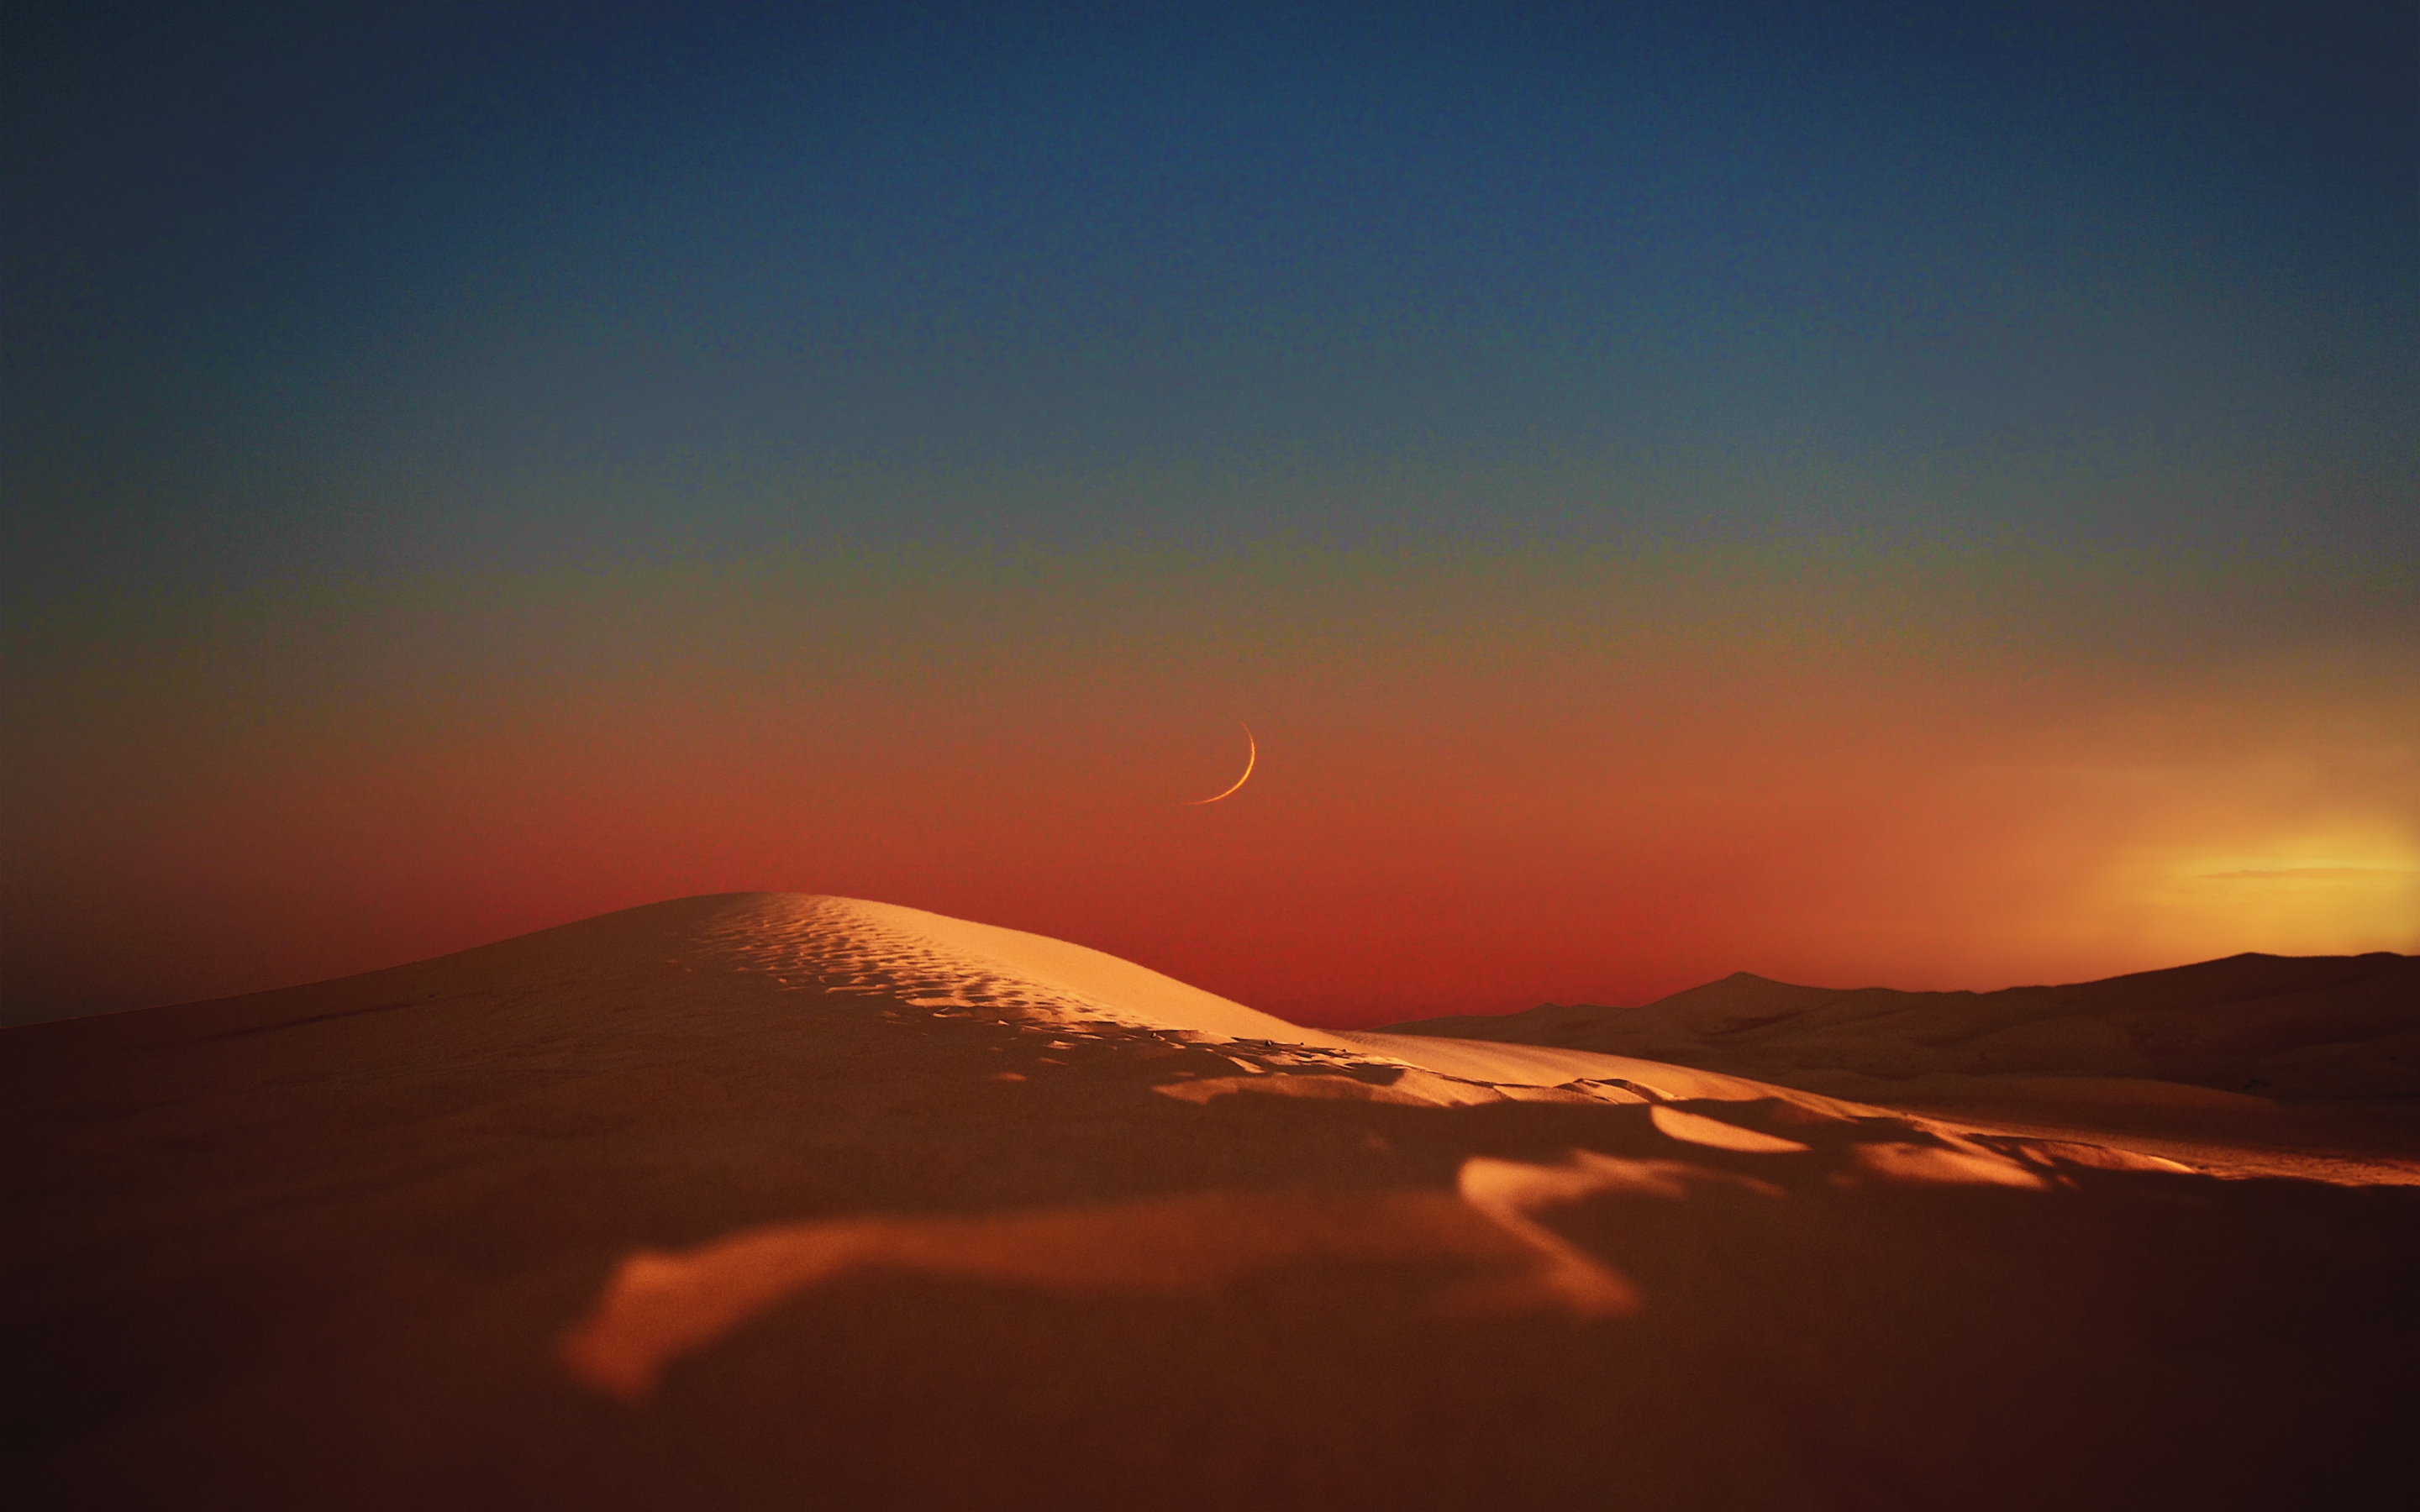 Landscape, desert, evening, moon, nature, 2880x1800 wallpaper